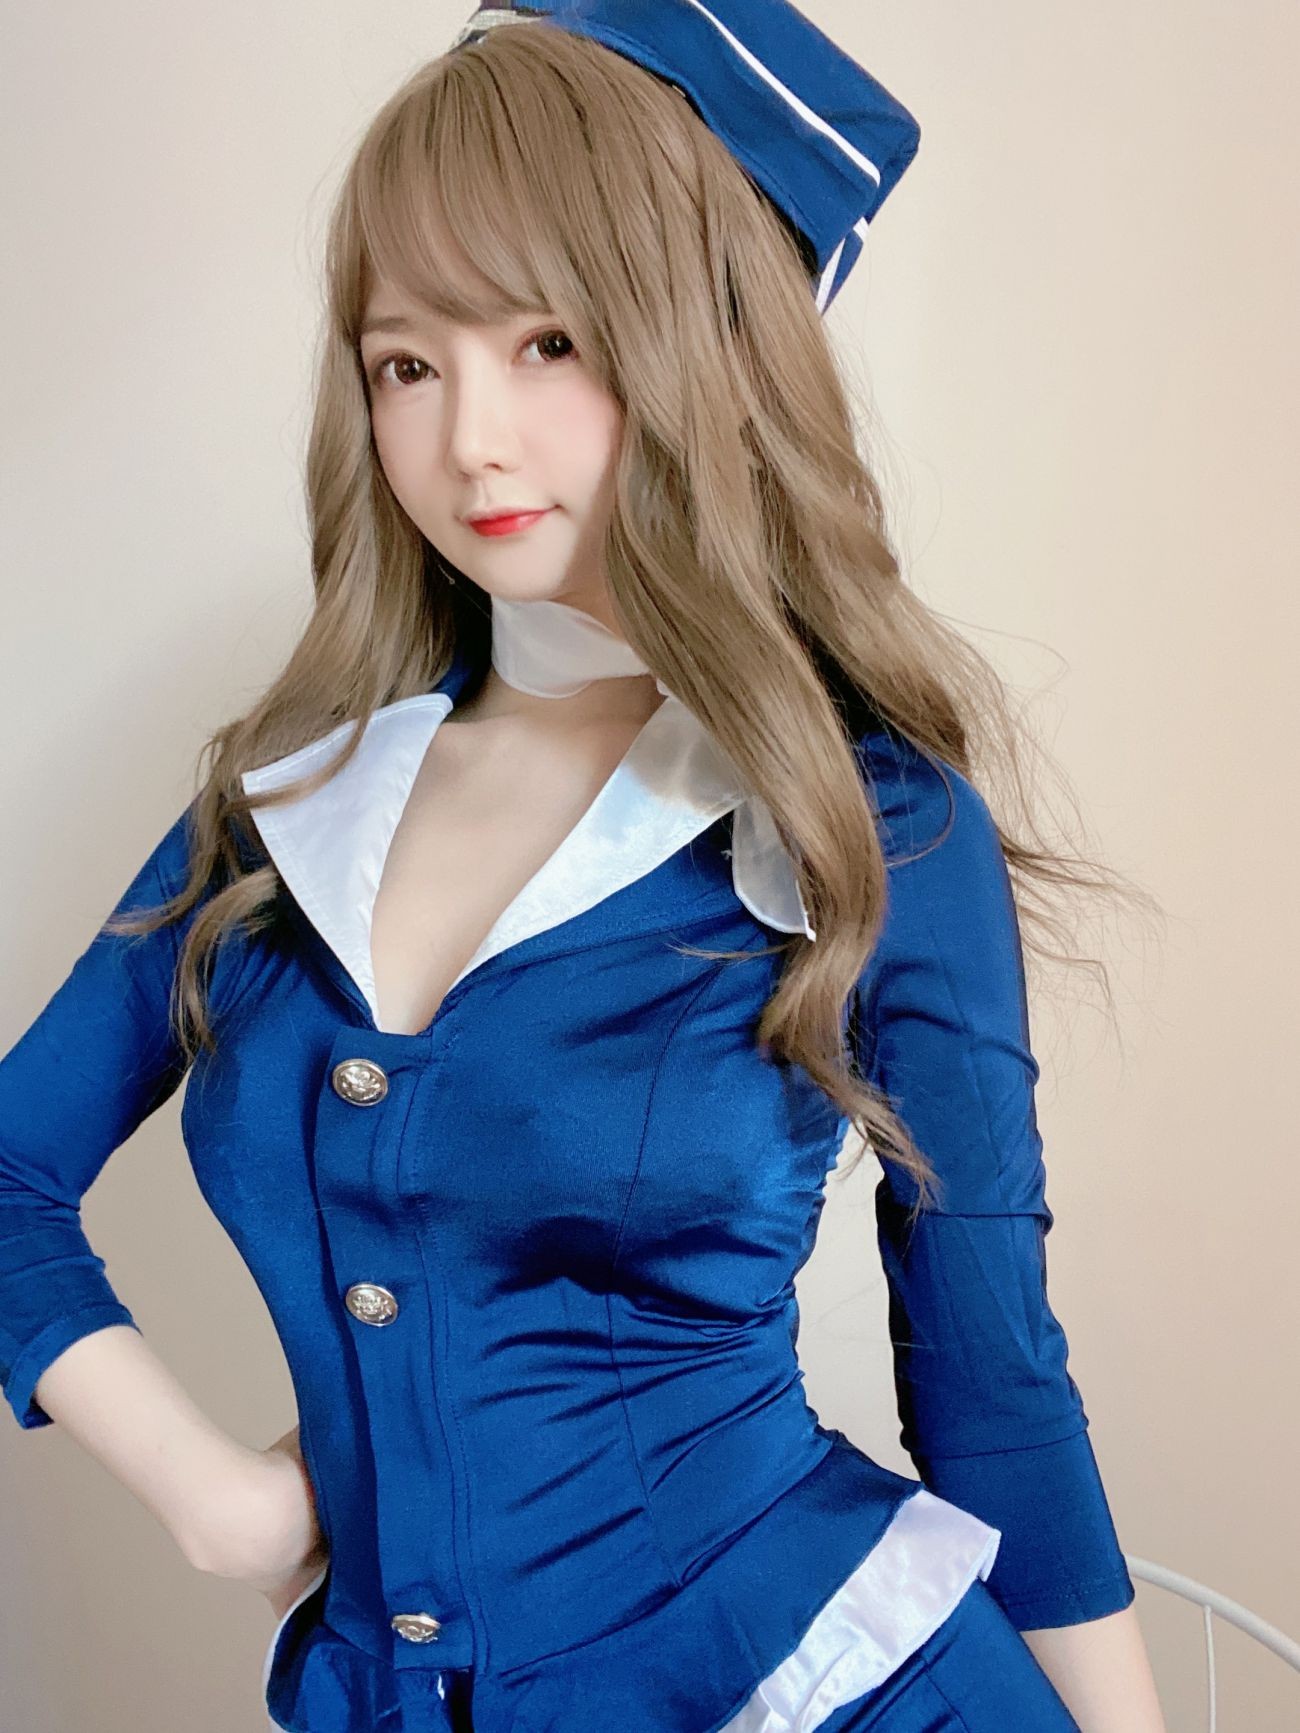 微博美少女51酱性感写真蓝色制服装 (26)